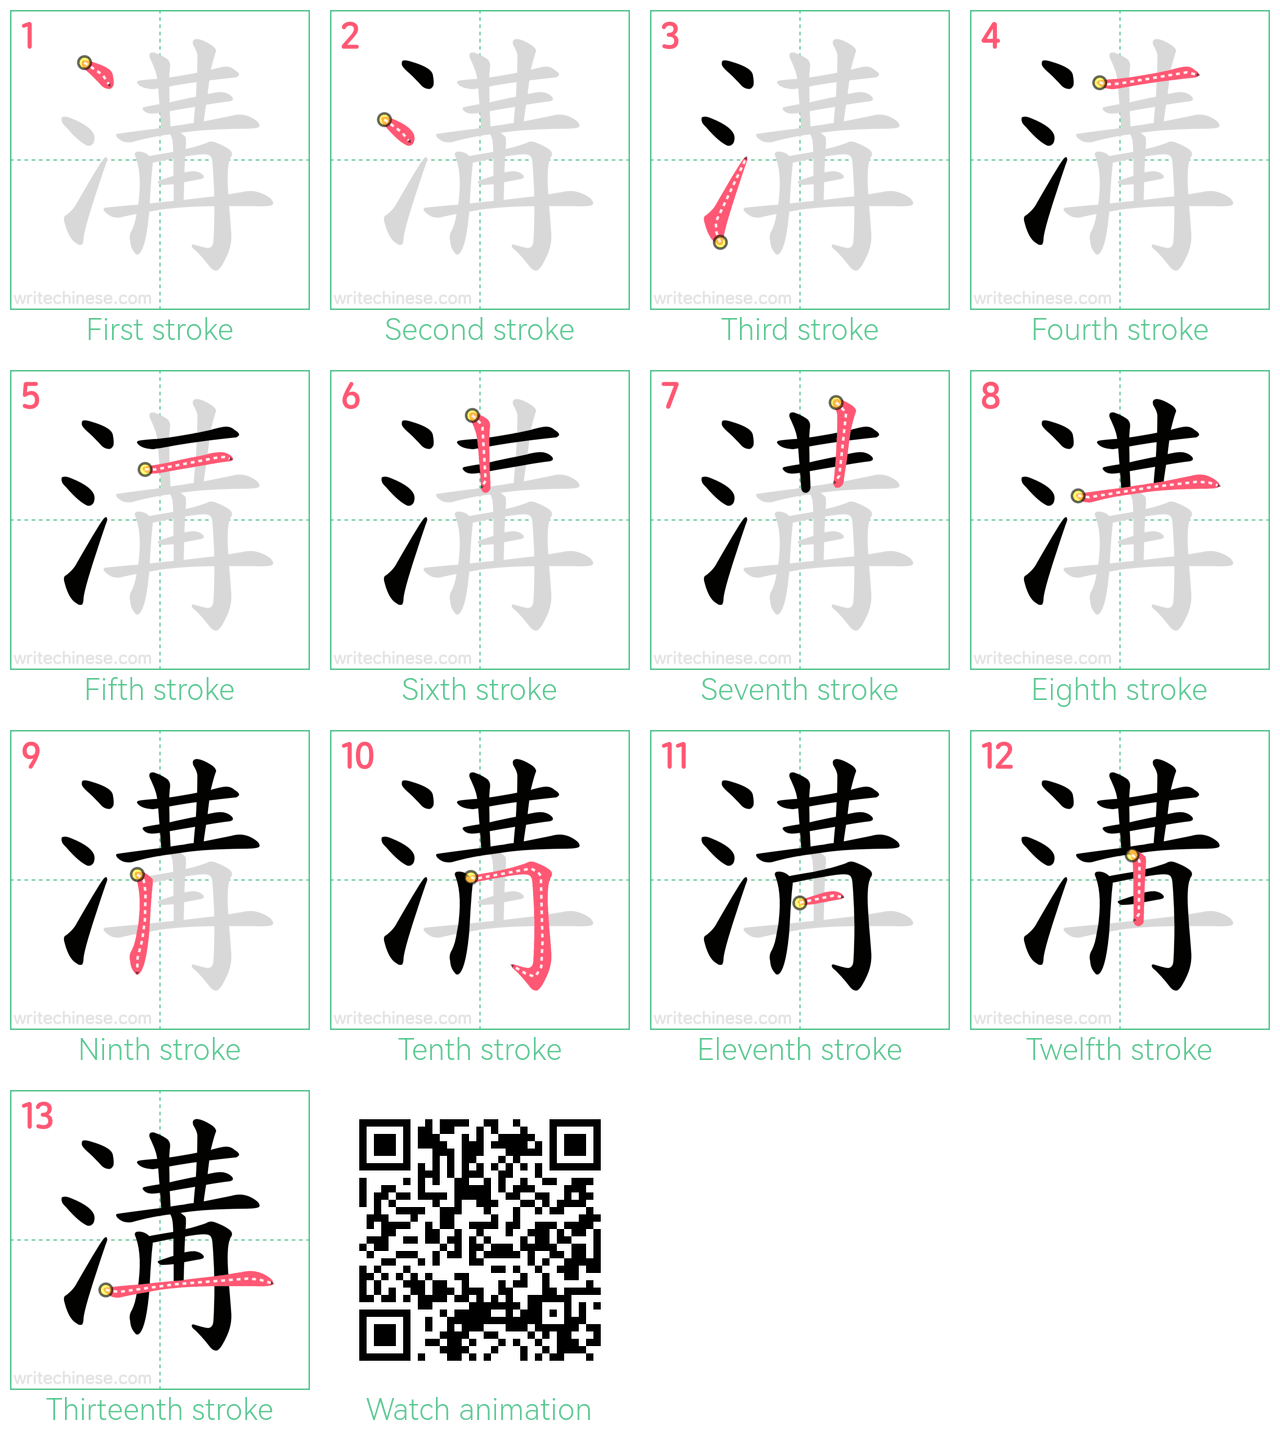 溝 step-by-step stroke order diagrams